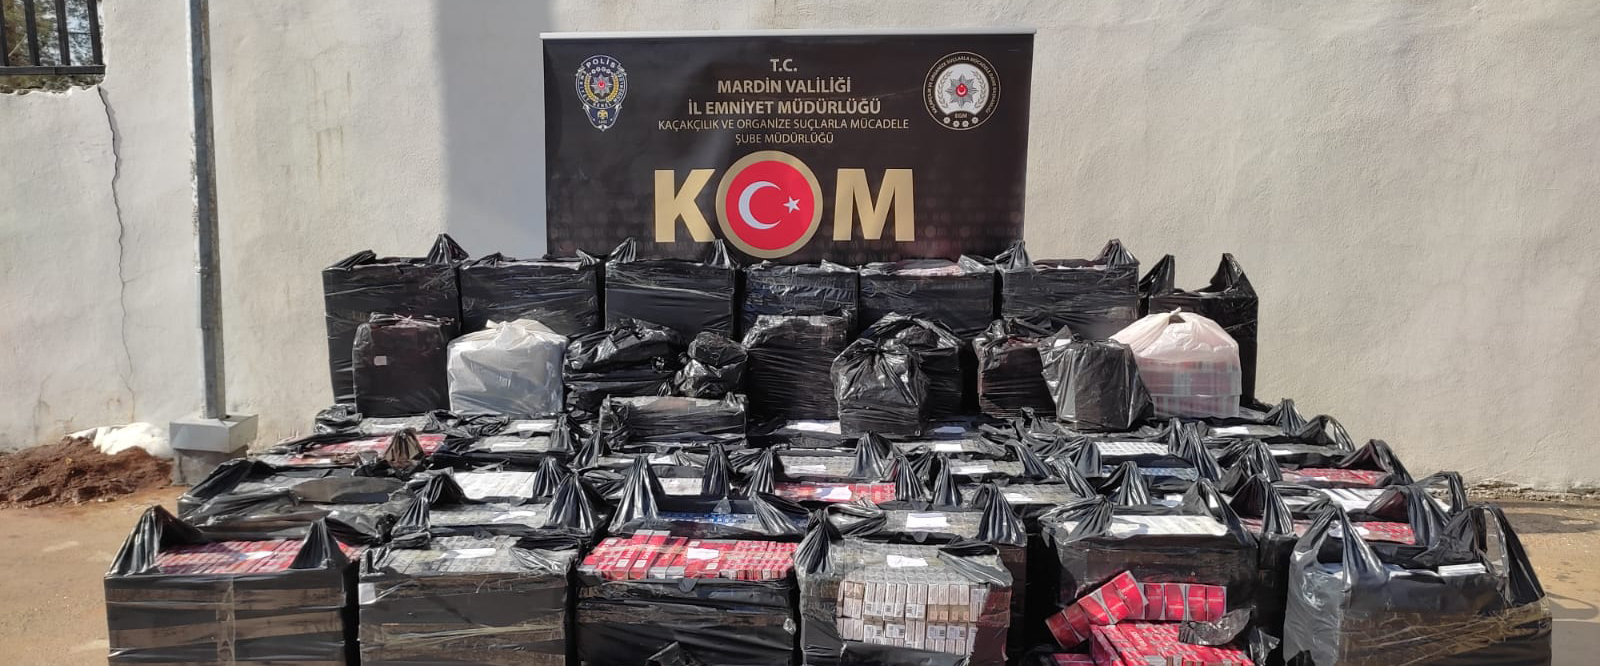 Kızıltepe’de 61 bin 580 paket kaçak sigara ele geçirildi